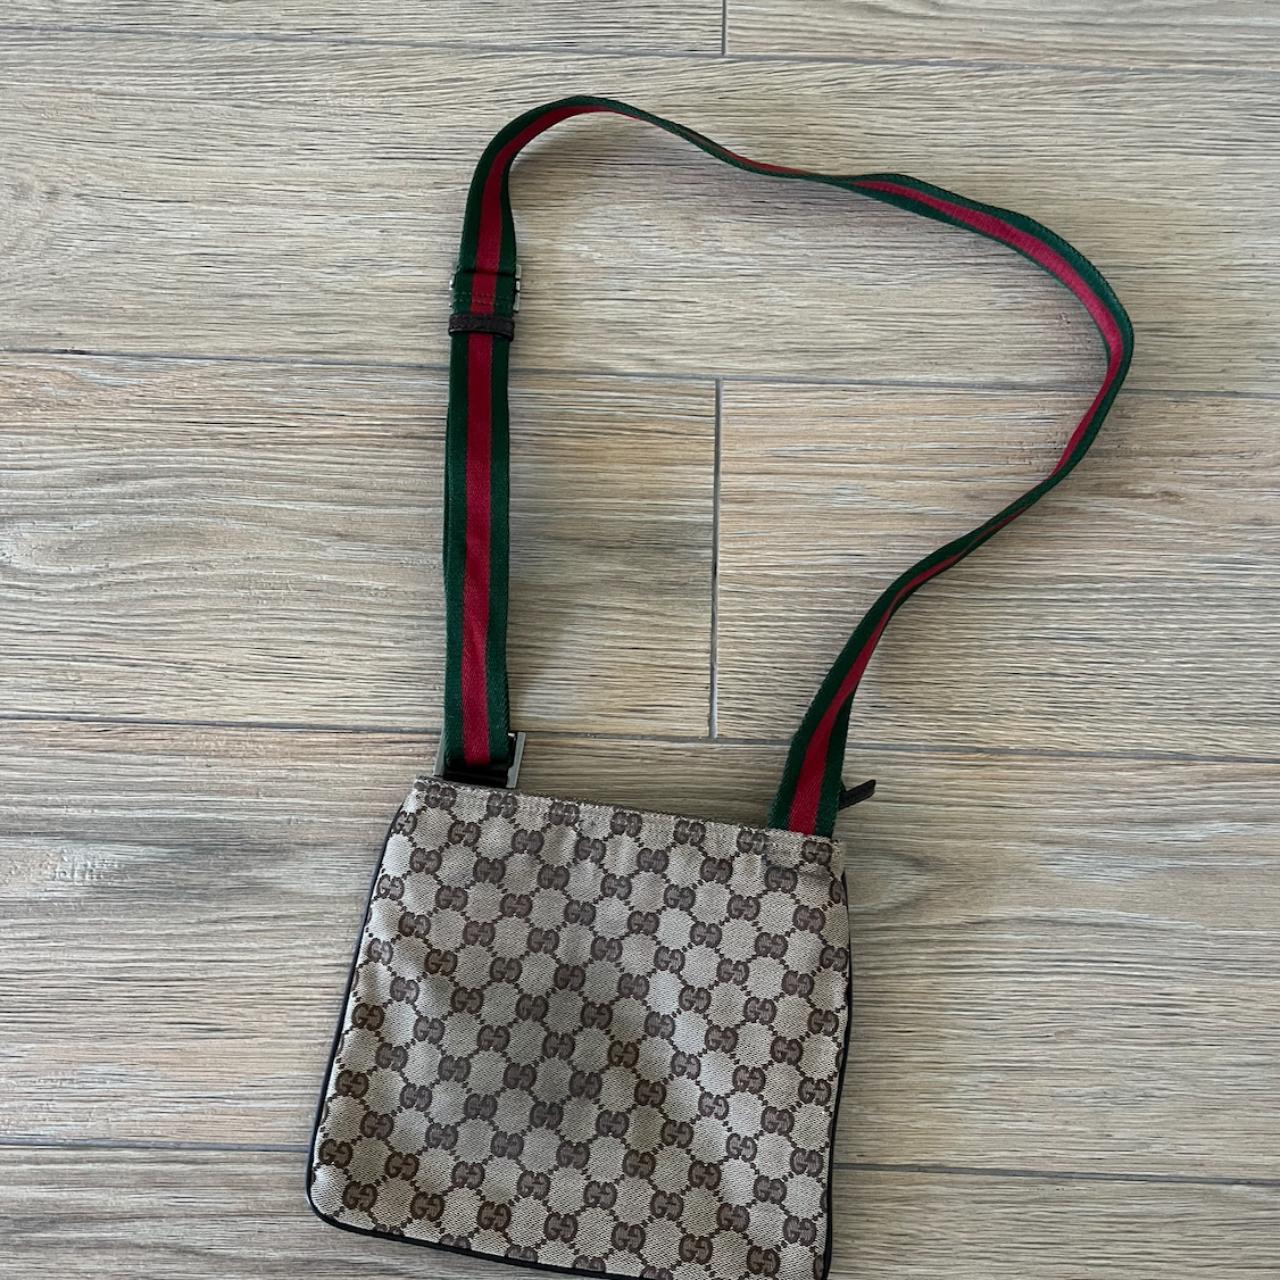 Rare find VINTAGE Gucci cross body shoulder bag - Depop